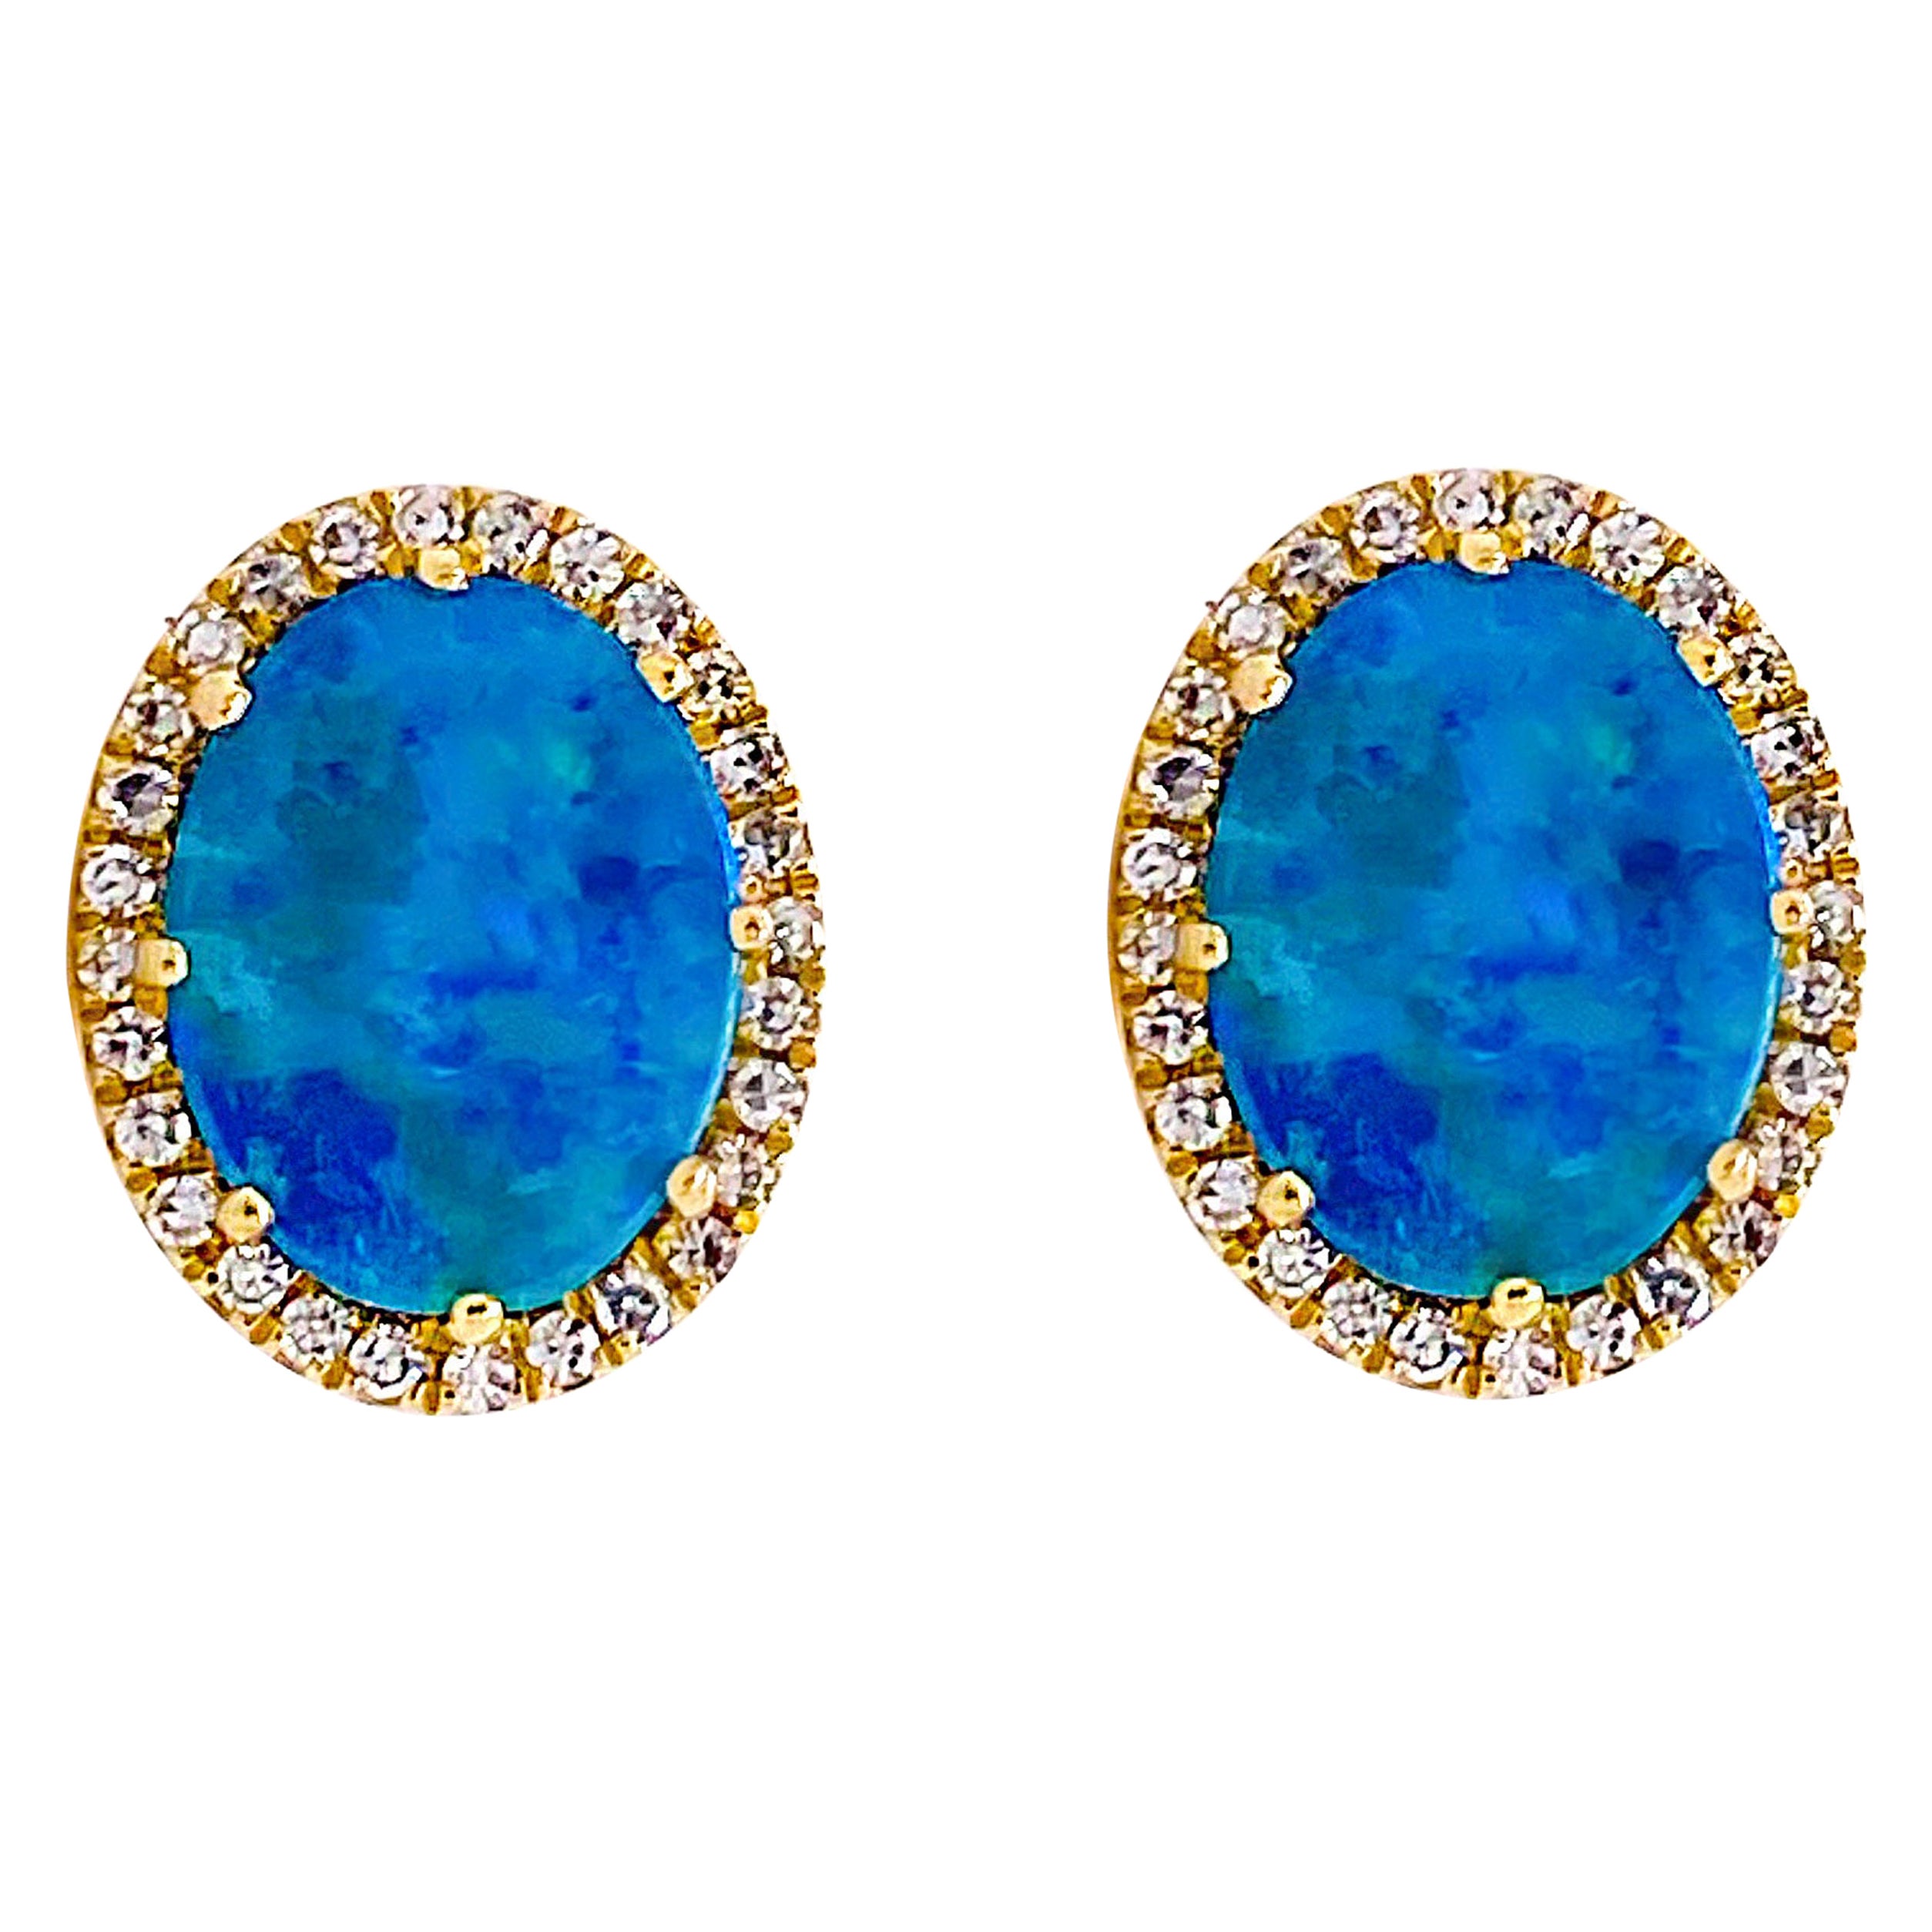 Opal Diamond Earrings, Genuine Black Opal, Diamond Halo Oval Stud Earrings 14K